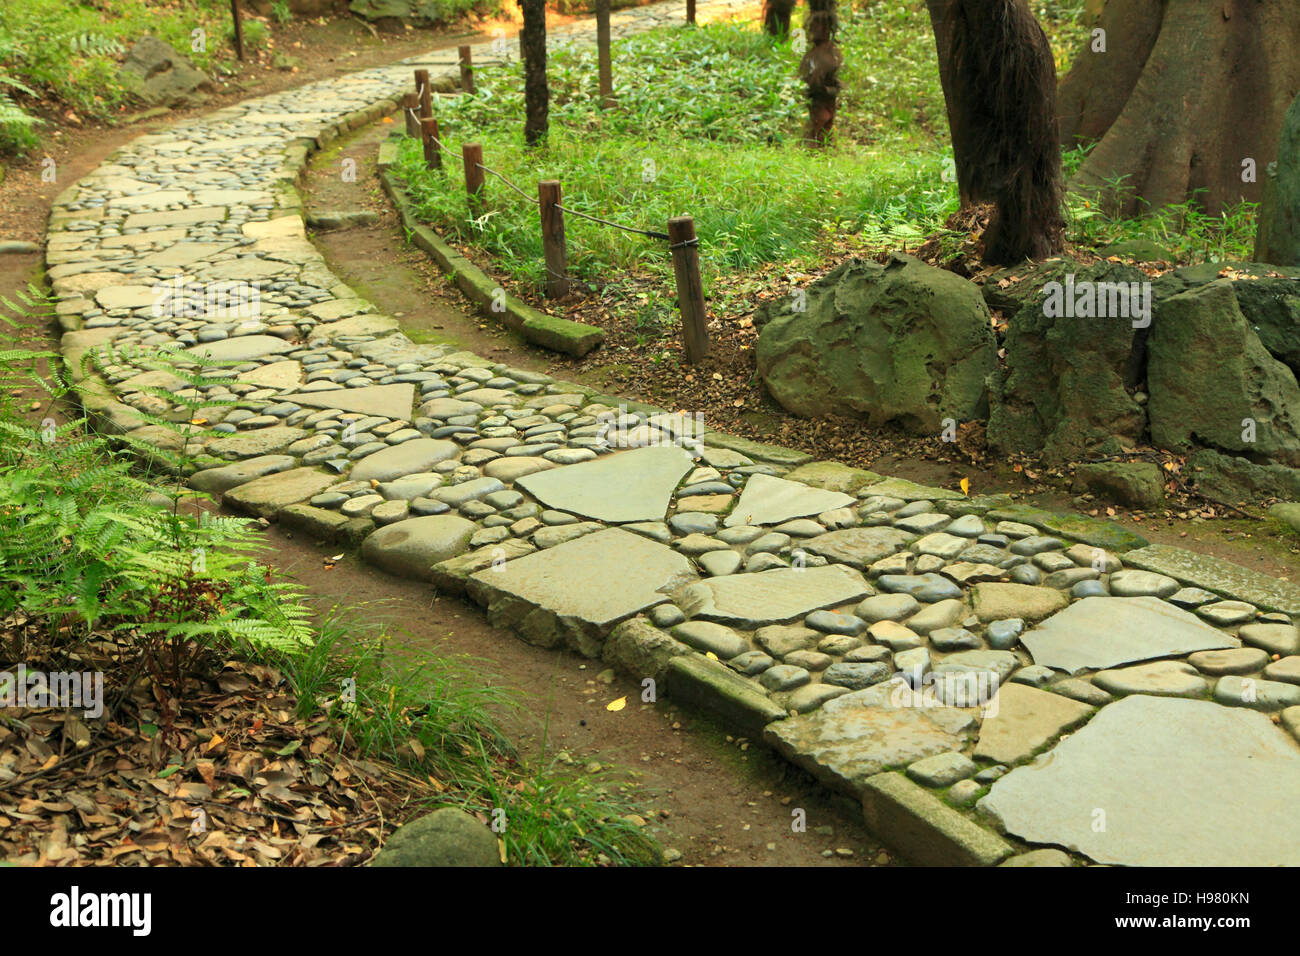 Japan, Tokyo, Koshikawa Korakuen Garden, stone path, Stock Photo